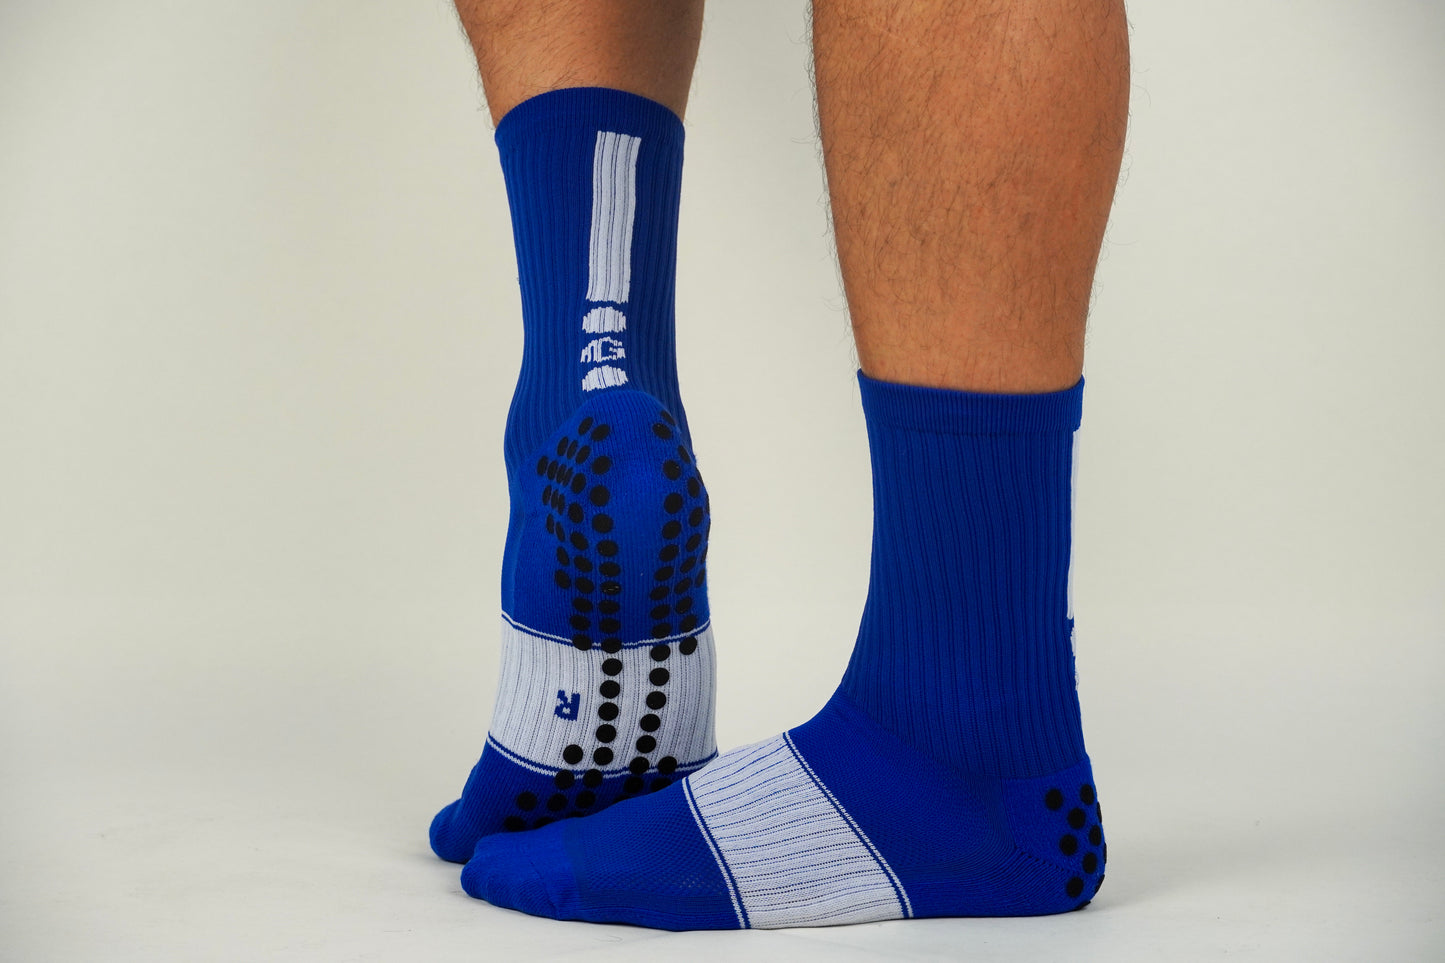 𝔾/𝕊𝕆𝕏 2.0 Non-Slip Grip Socks /Blue/